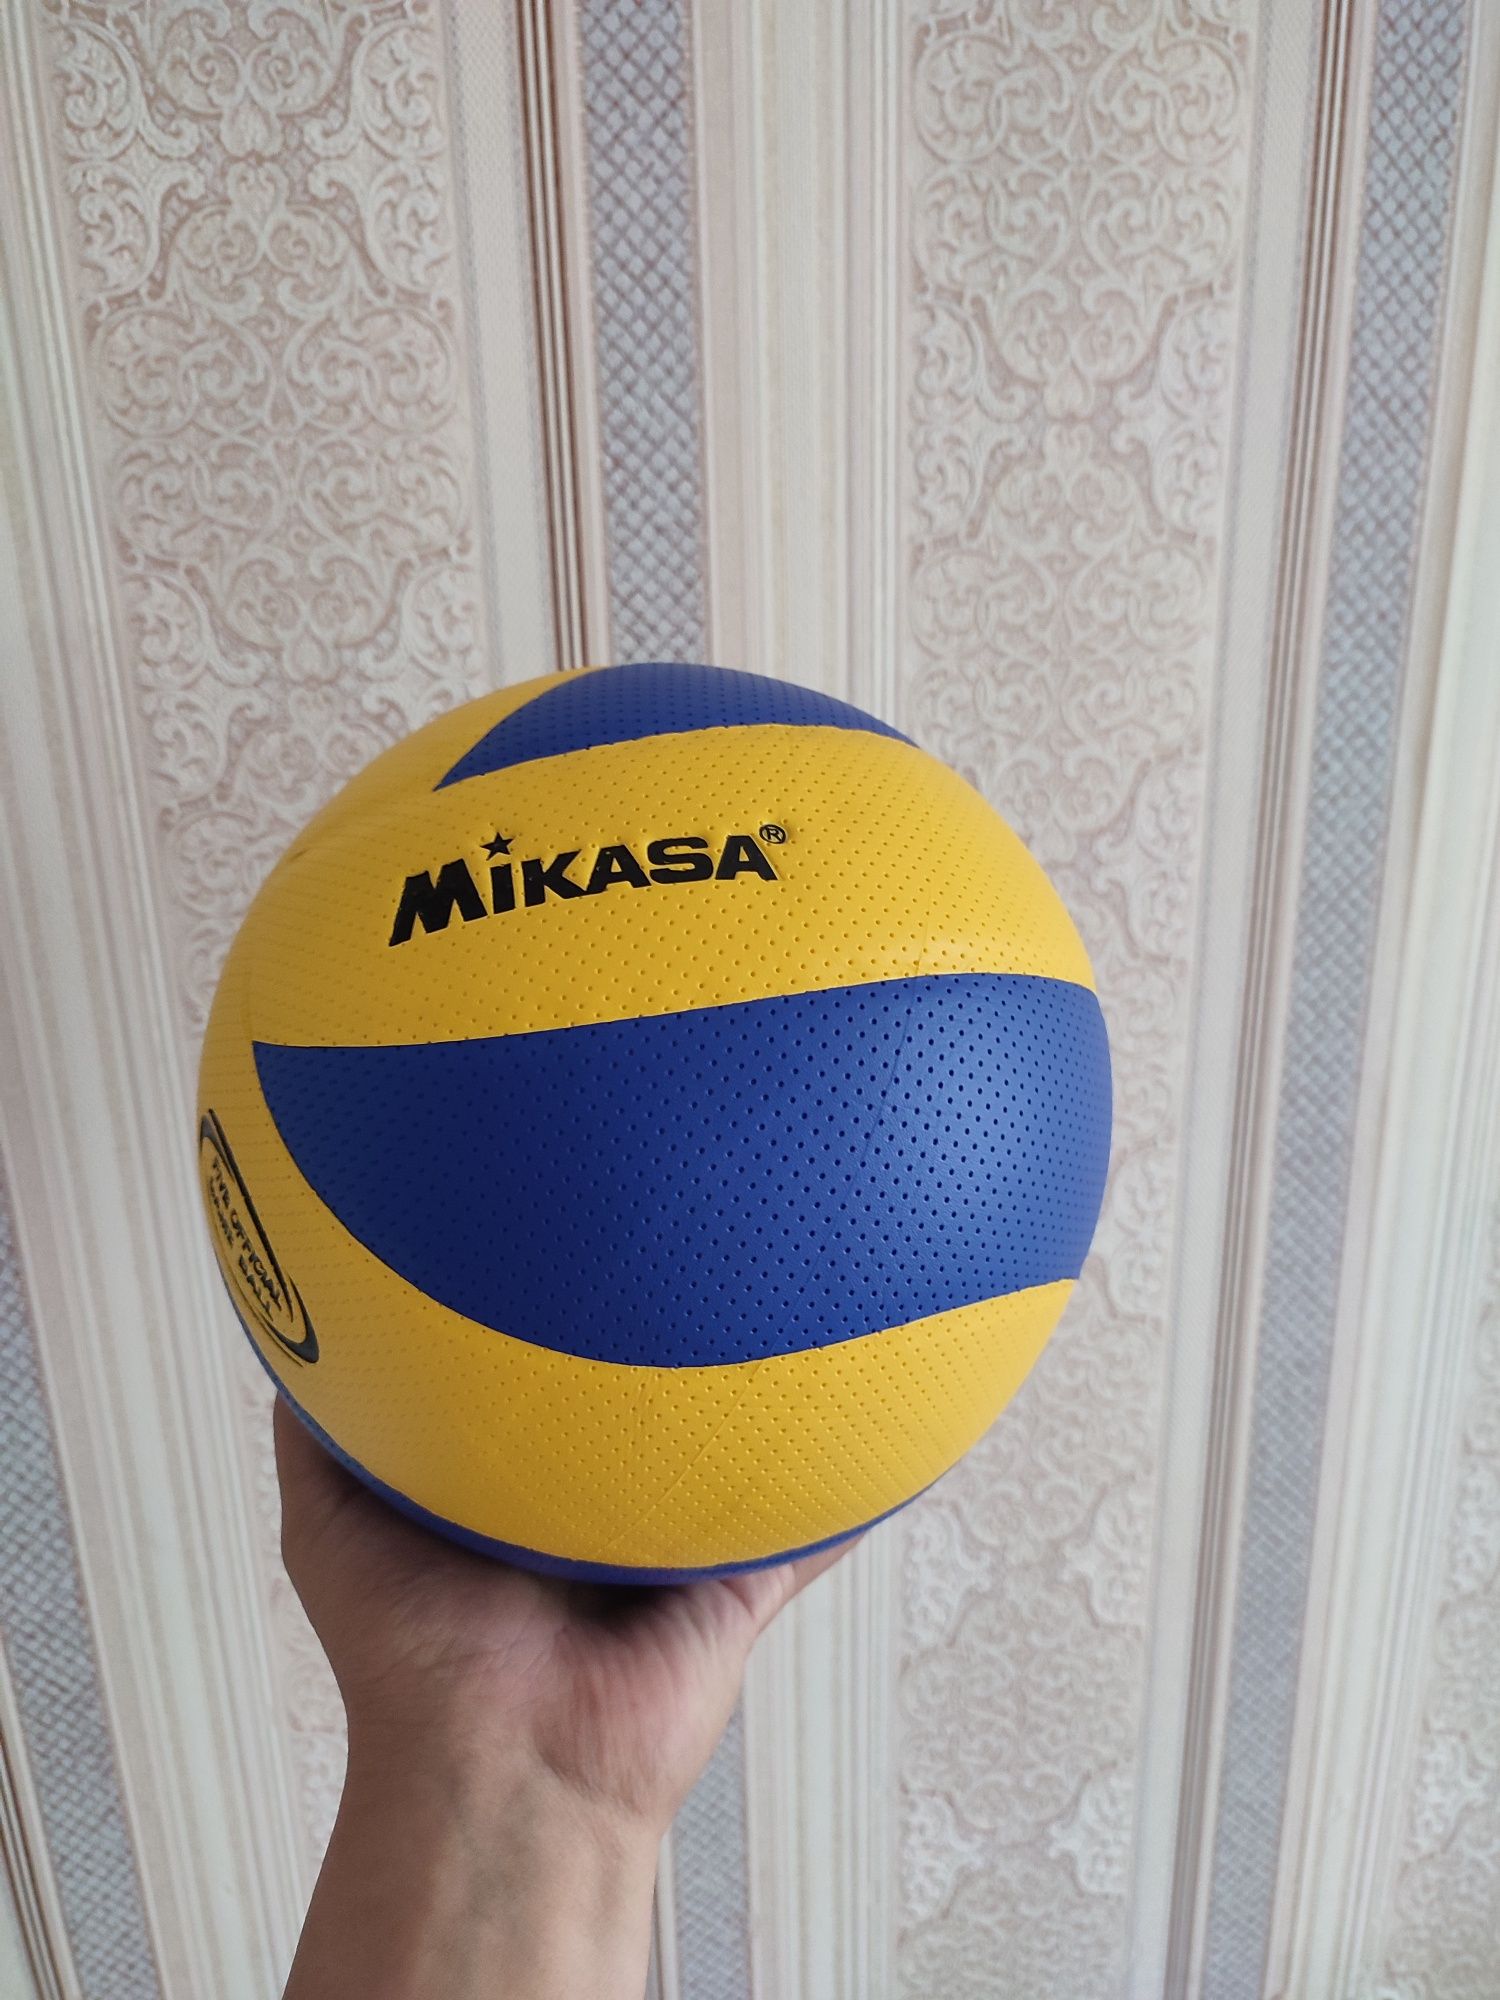 Волейбольные мячи Mikasa